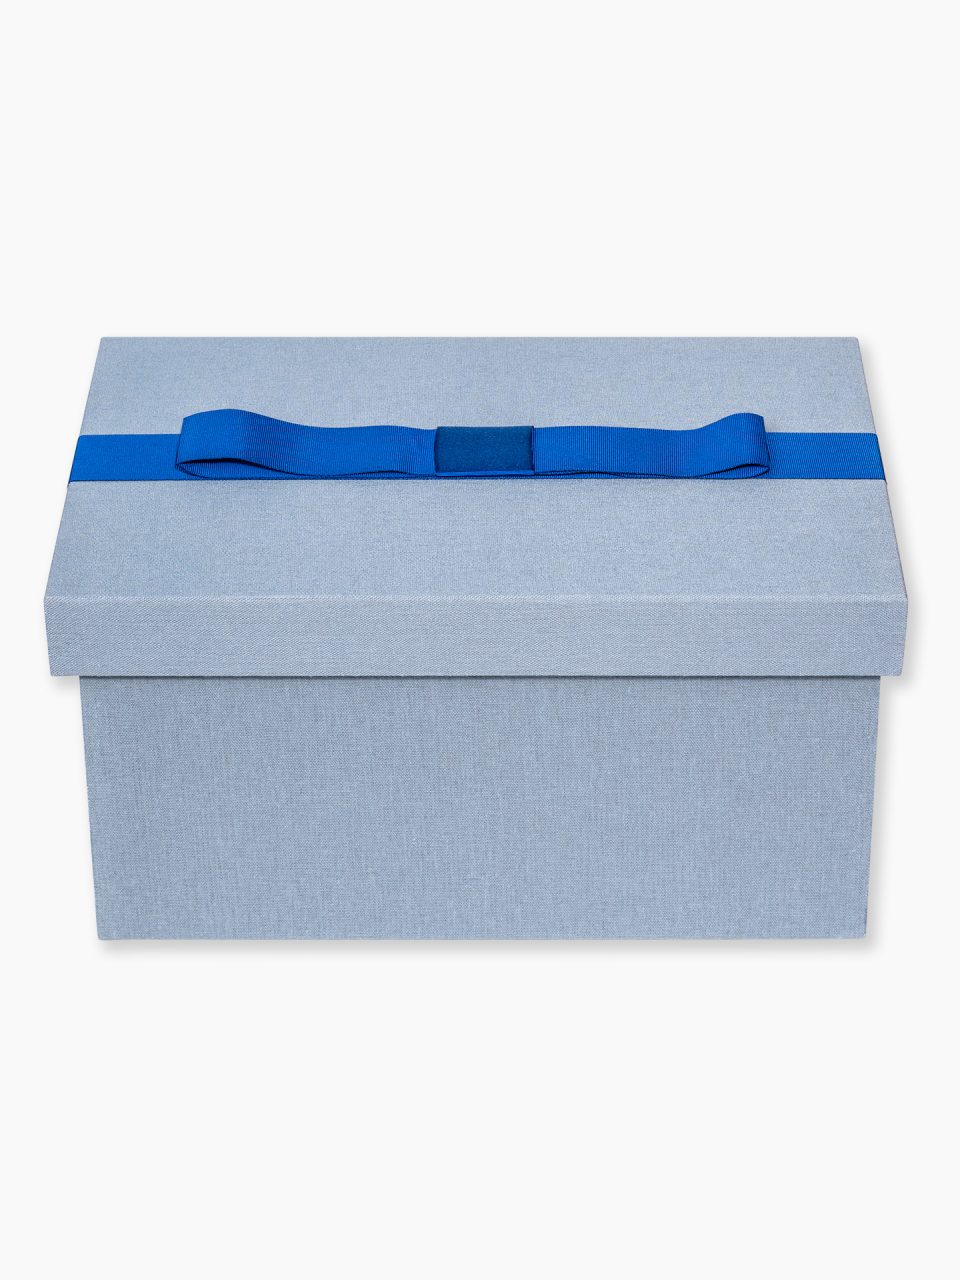 Kit Good Memories IV : caixa forrada grande com espaço para necessaire + convite